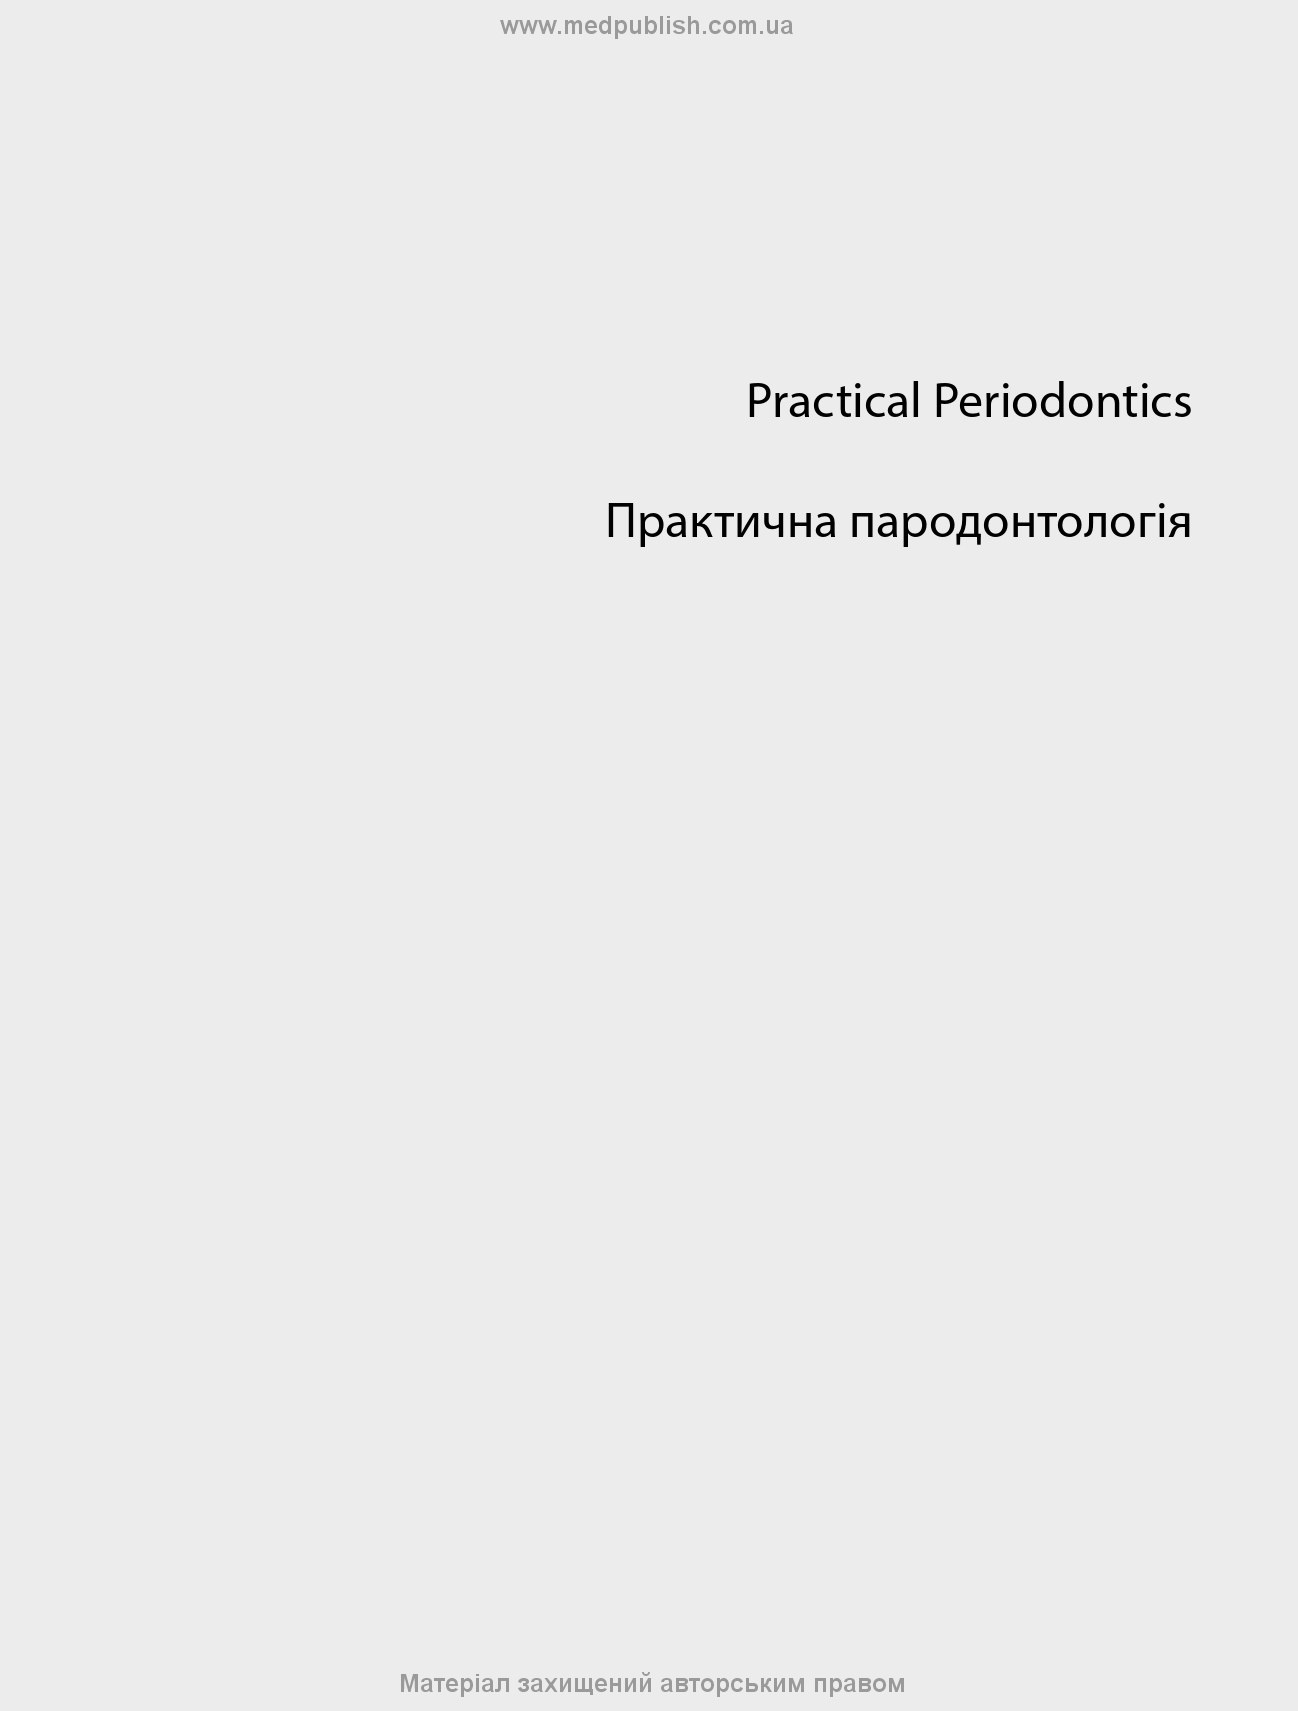 Практична пародонтологія: 2-е видання. Автор — За редакцією. 